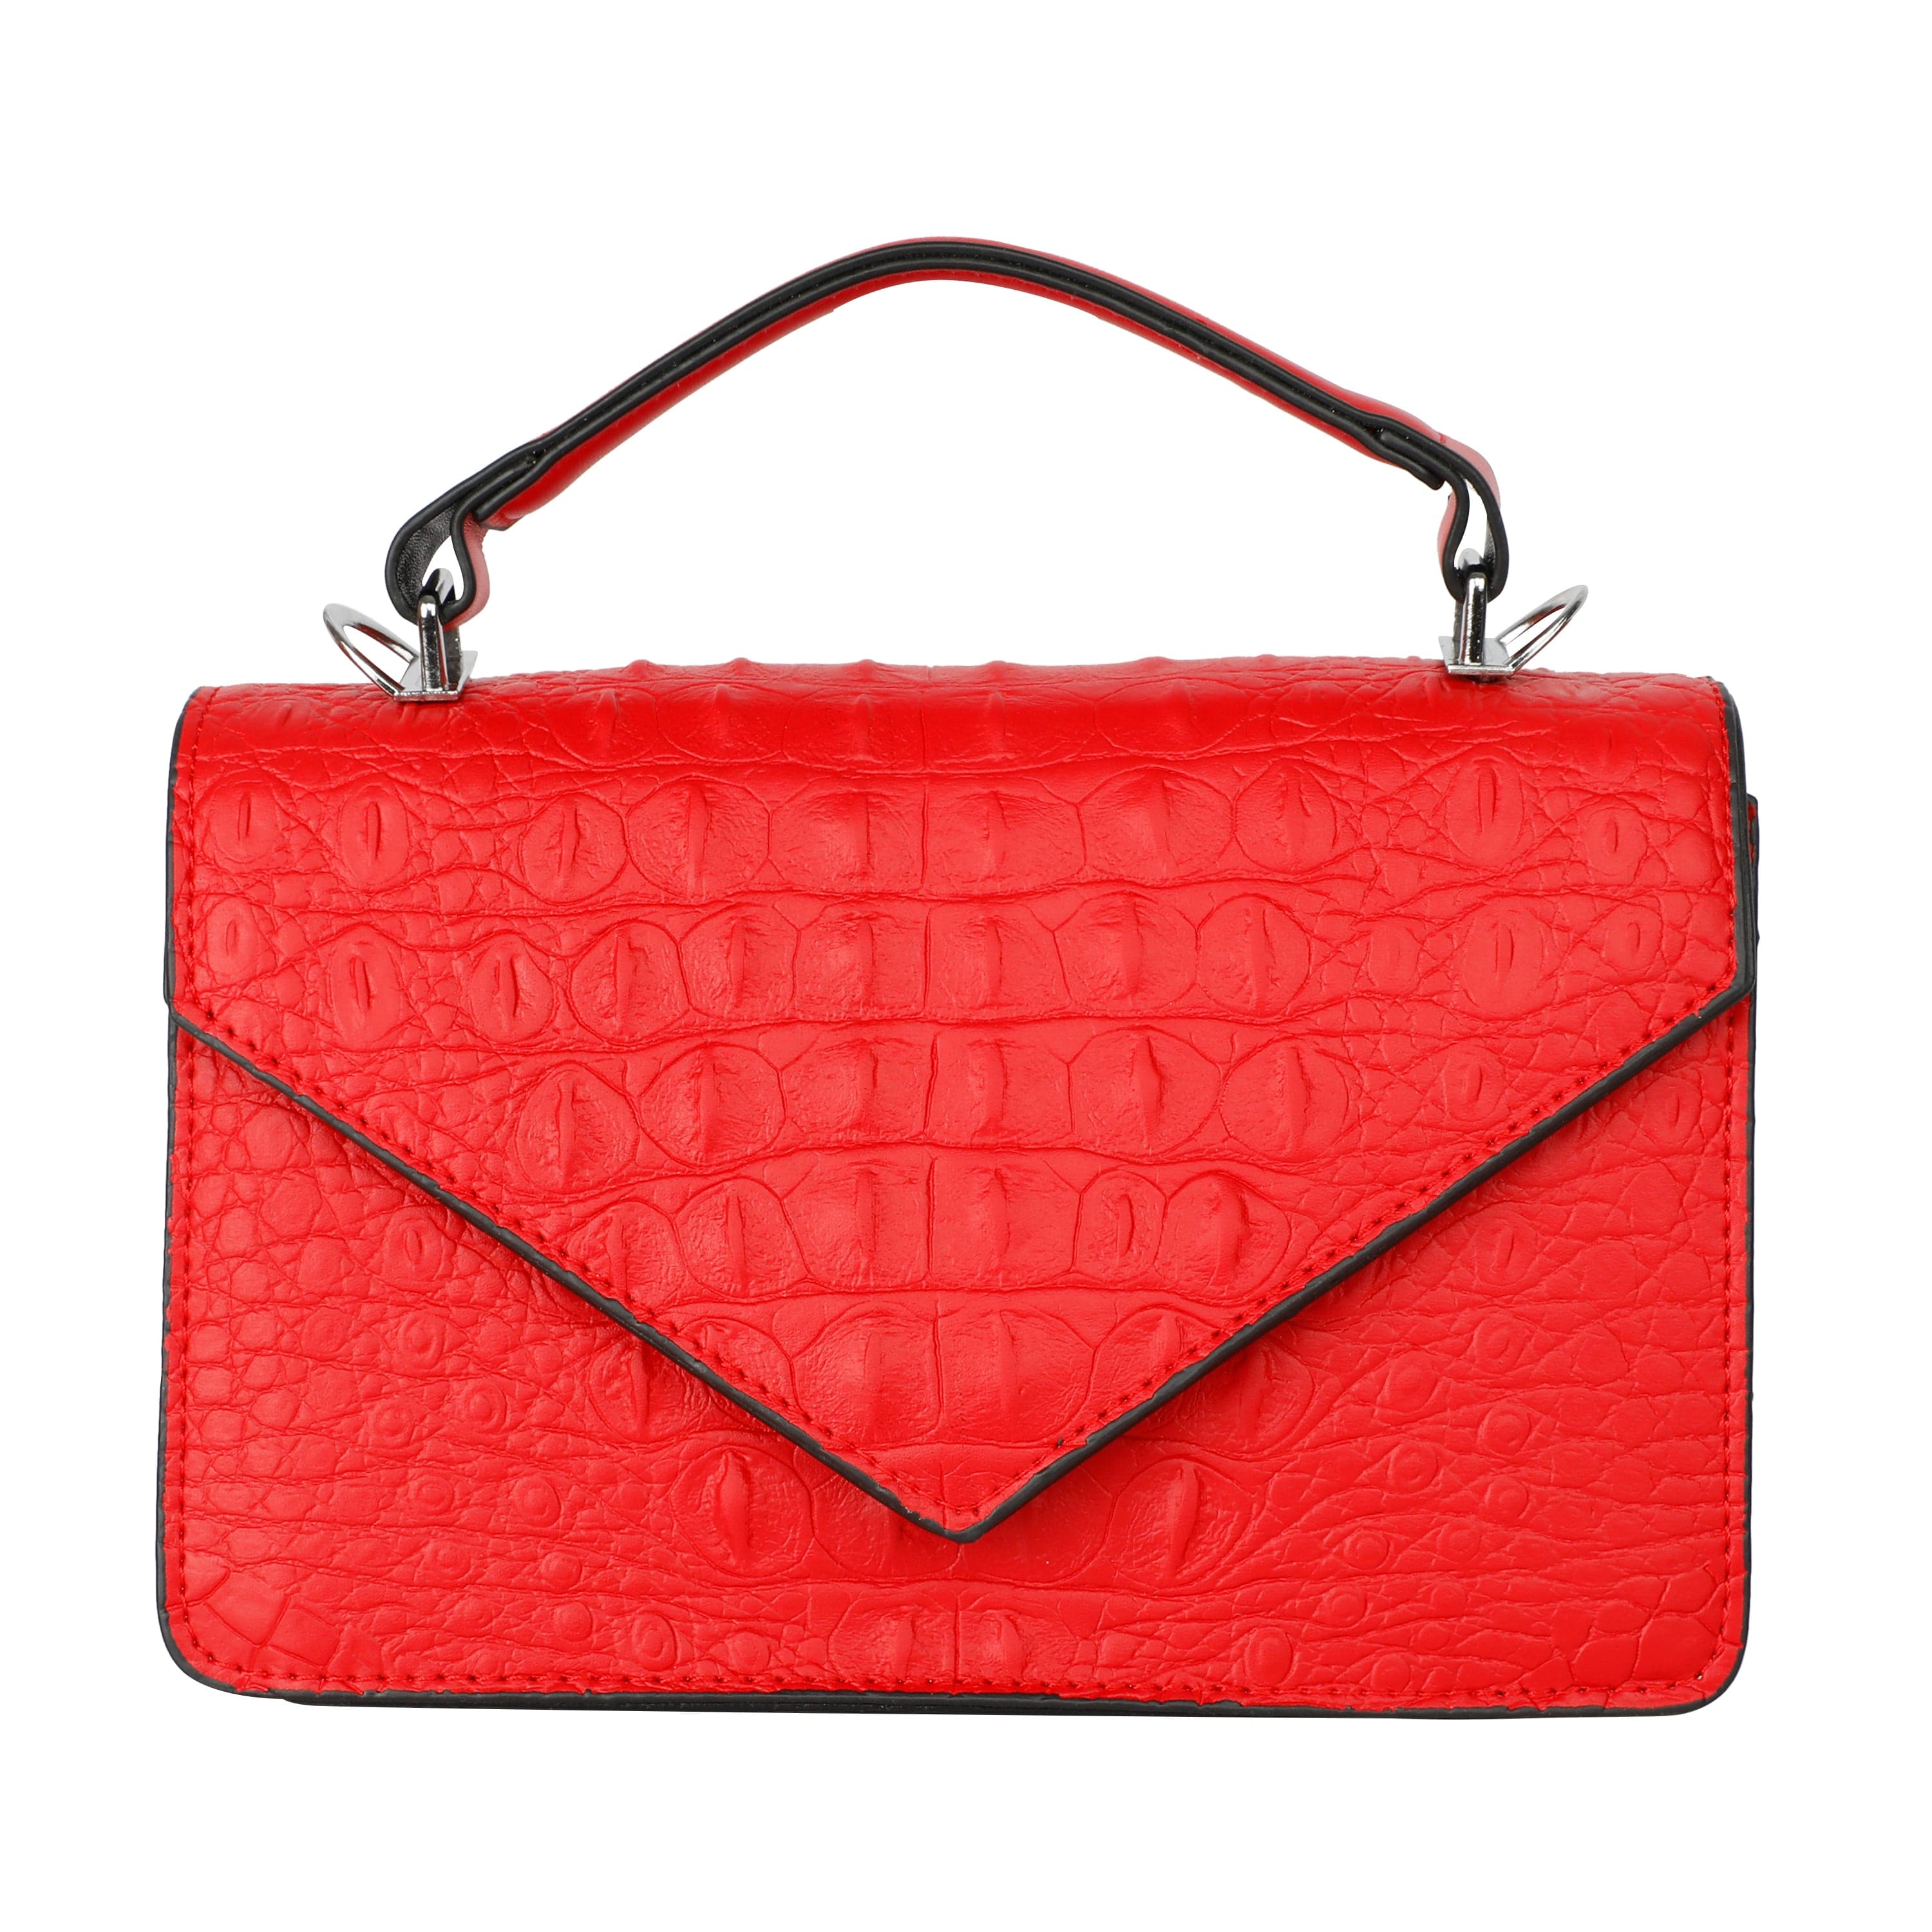 Kinnoti Sling bag Red Latest Croco Style Bag